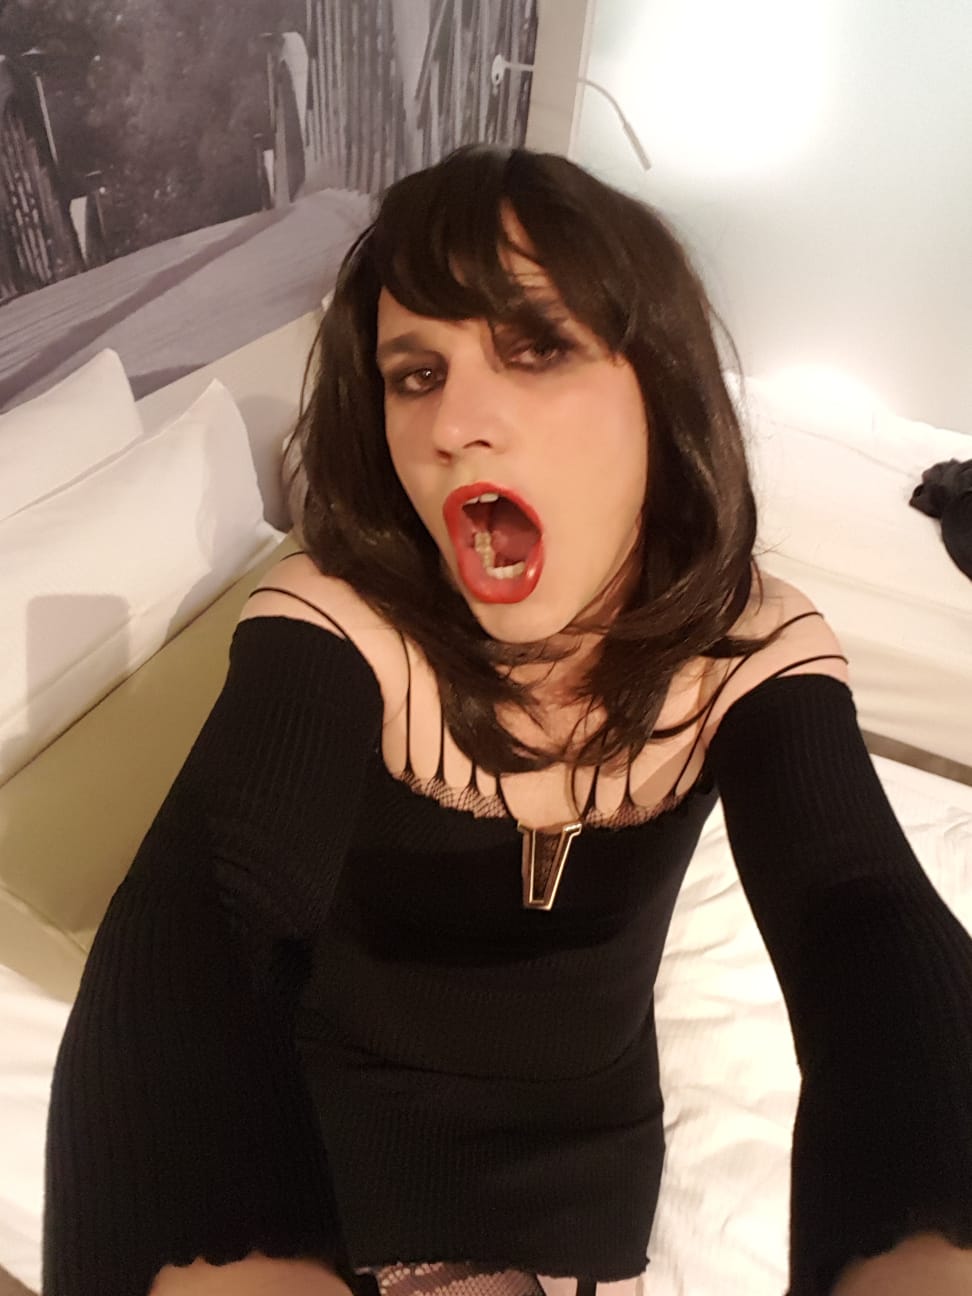 Simonatv Exposed Sissy Crossdresser Whore Slut Free Shemale Gallery